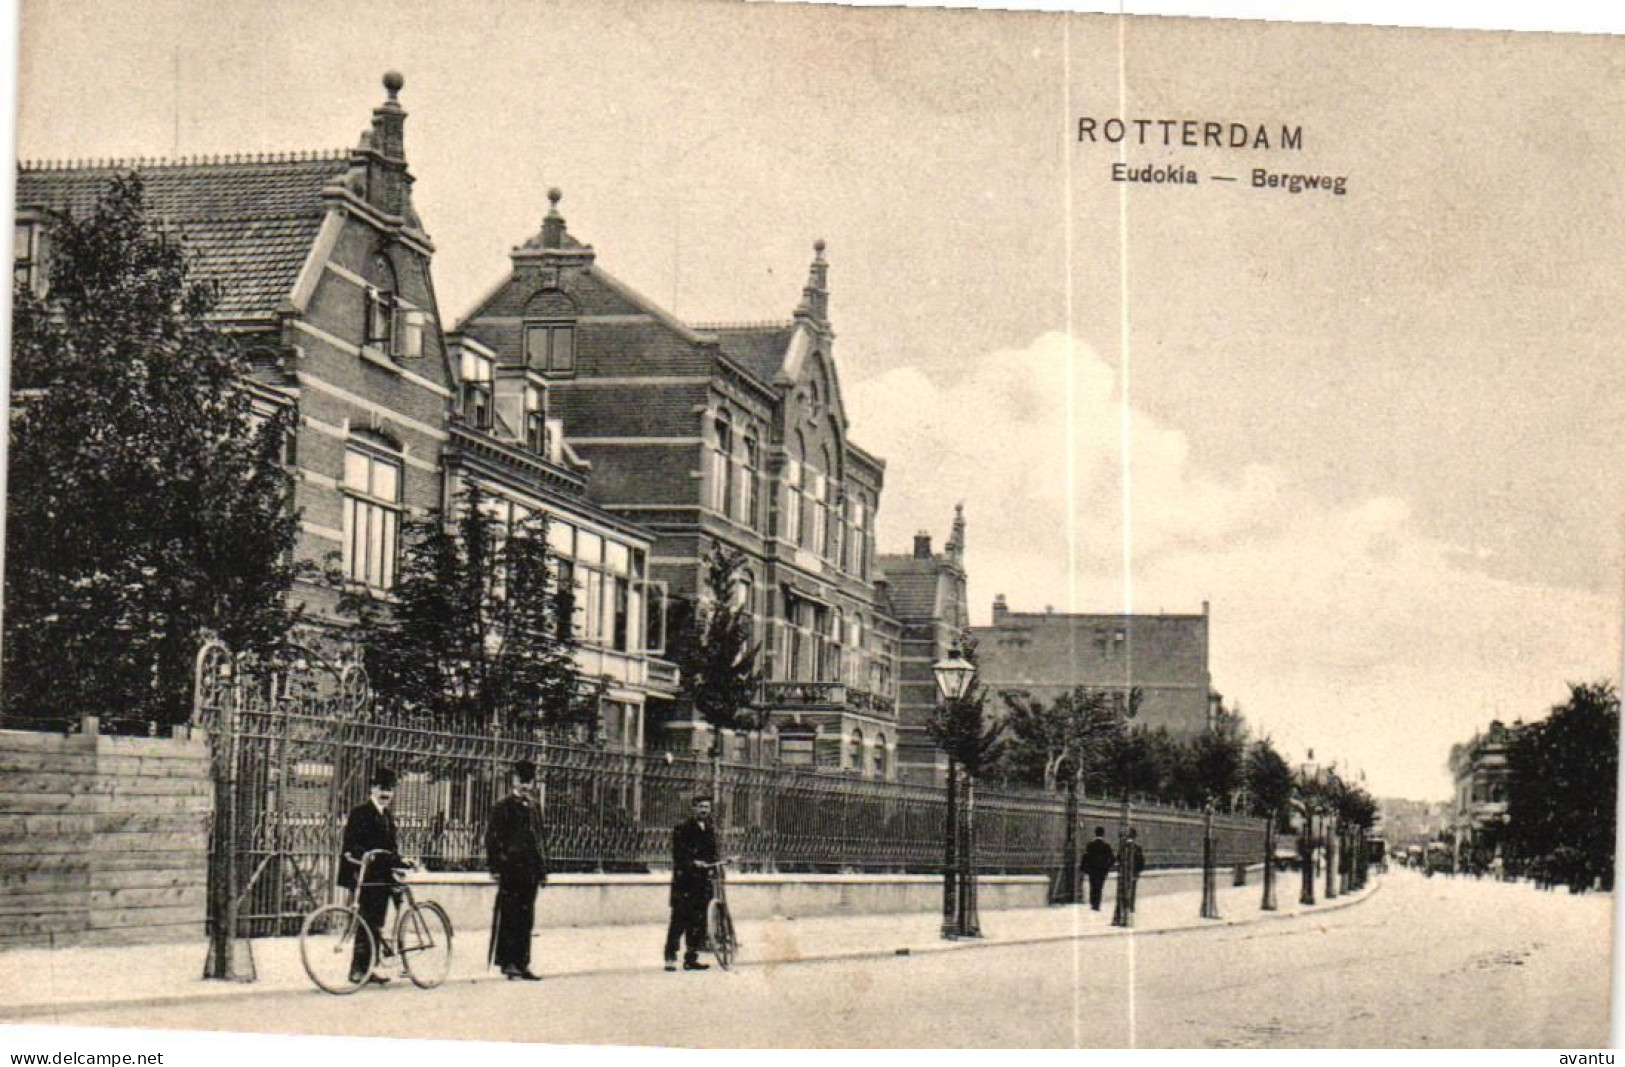 ROTTERDAM / EUDOKIA / BERGWEG - Rotterdam